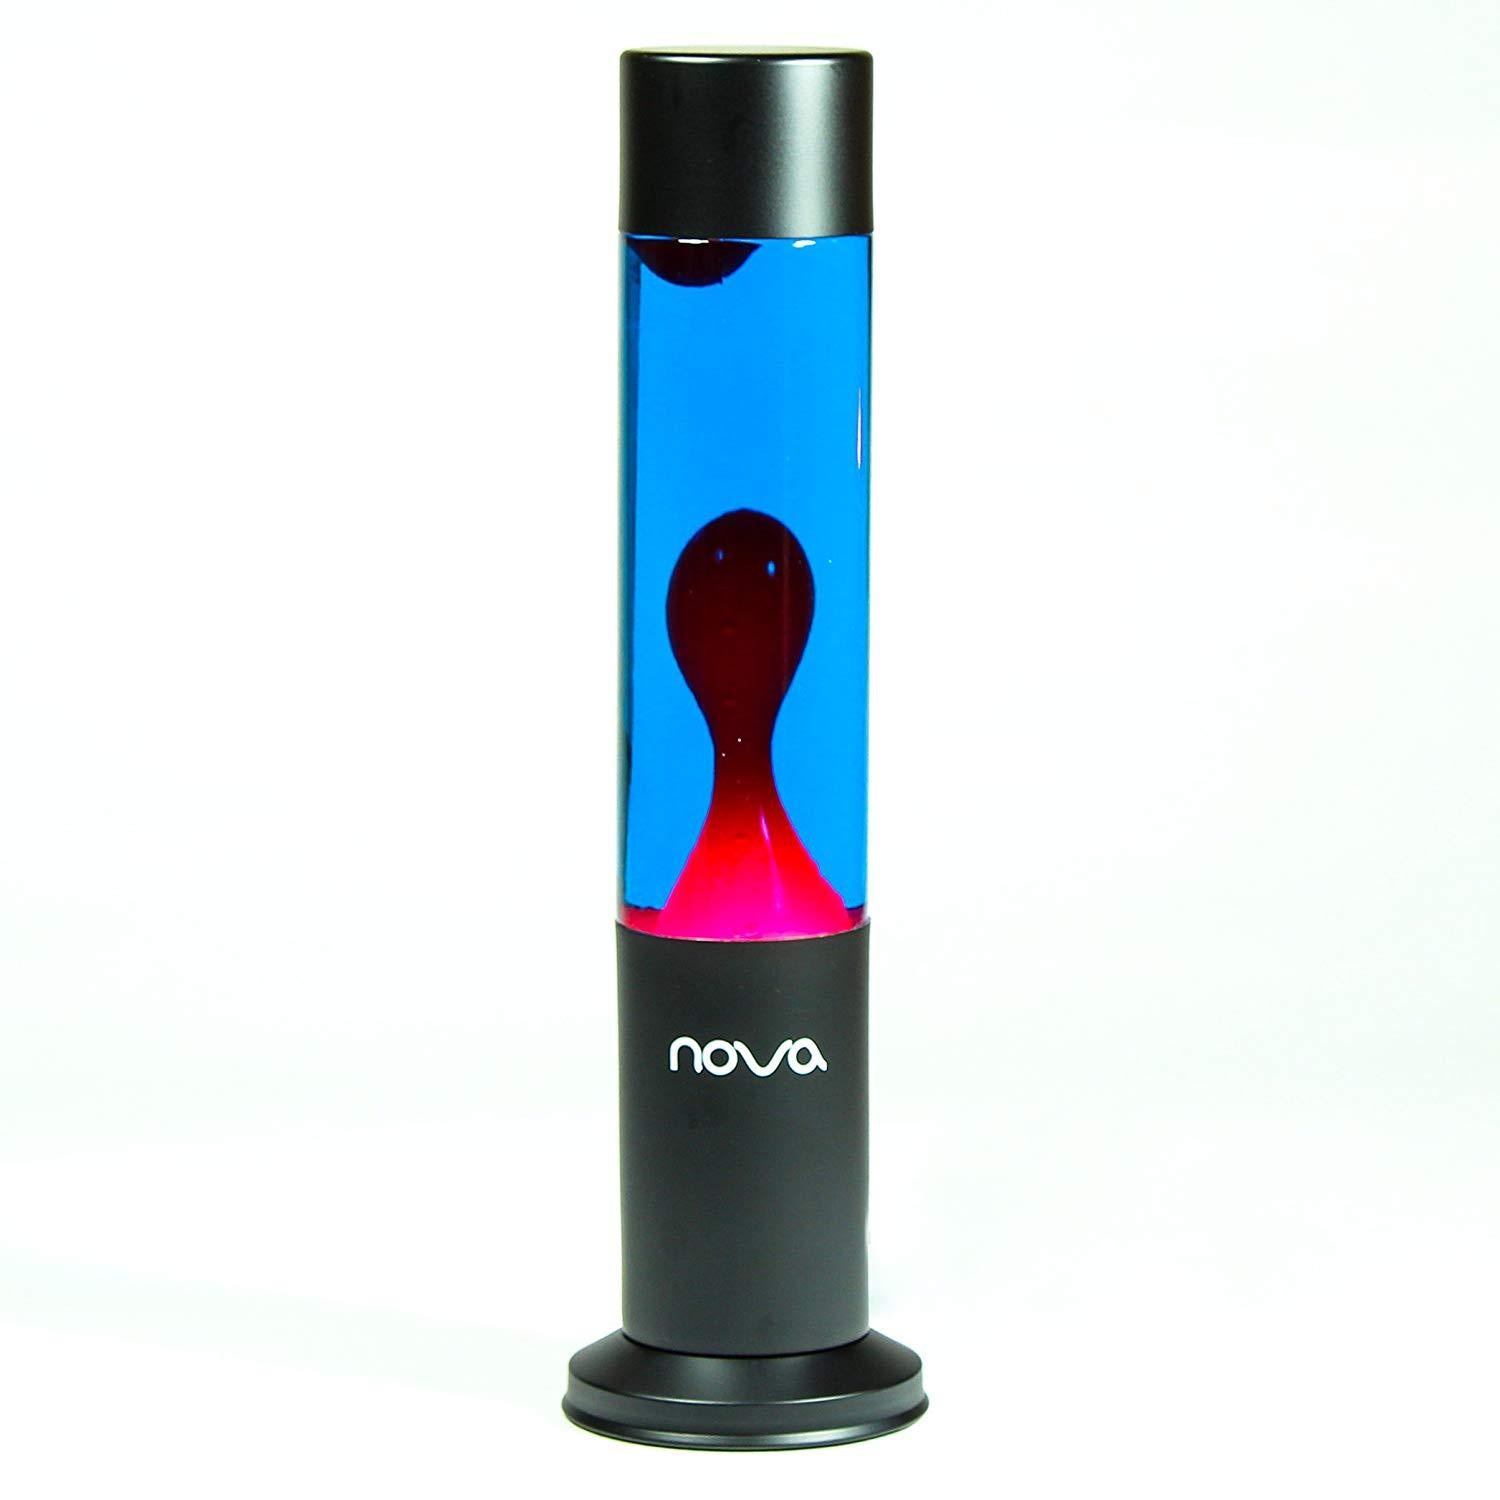 Nova Lava Lamp Blue Liquid Red Wax